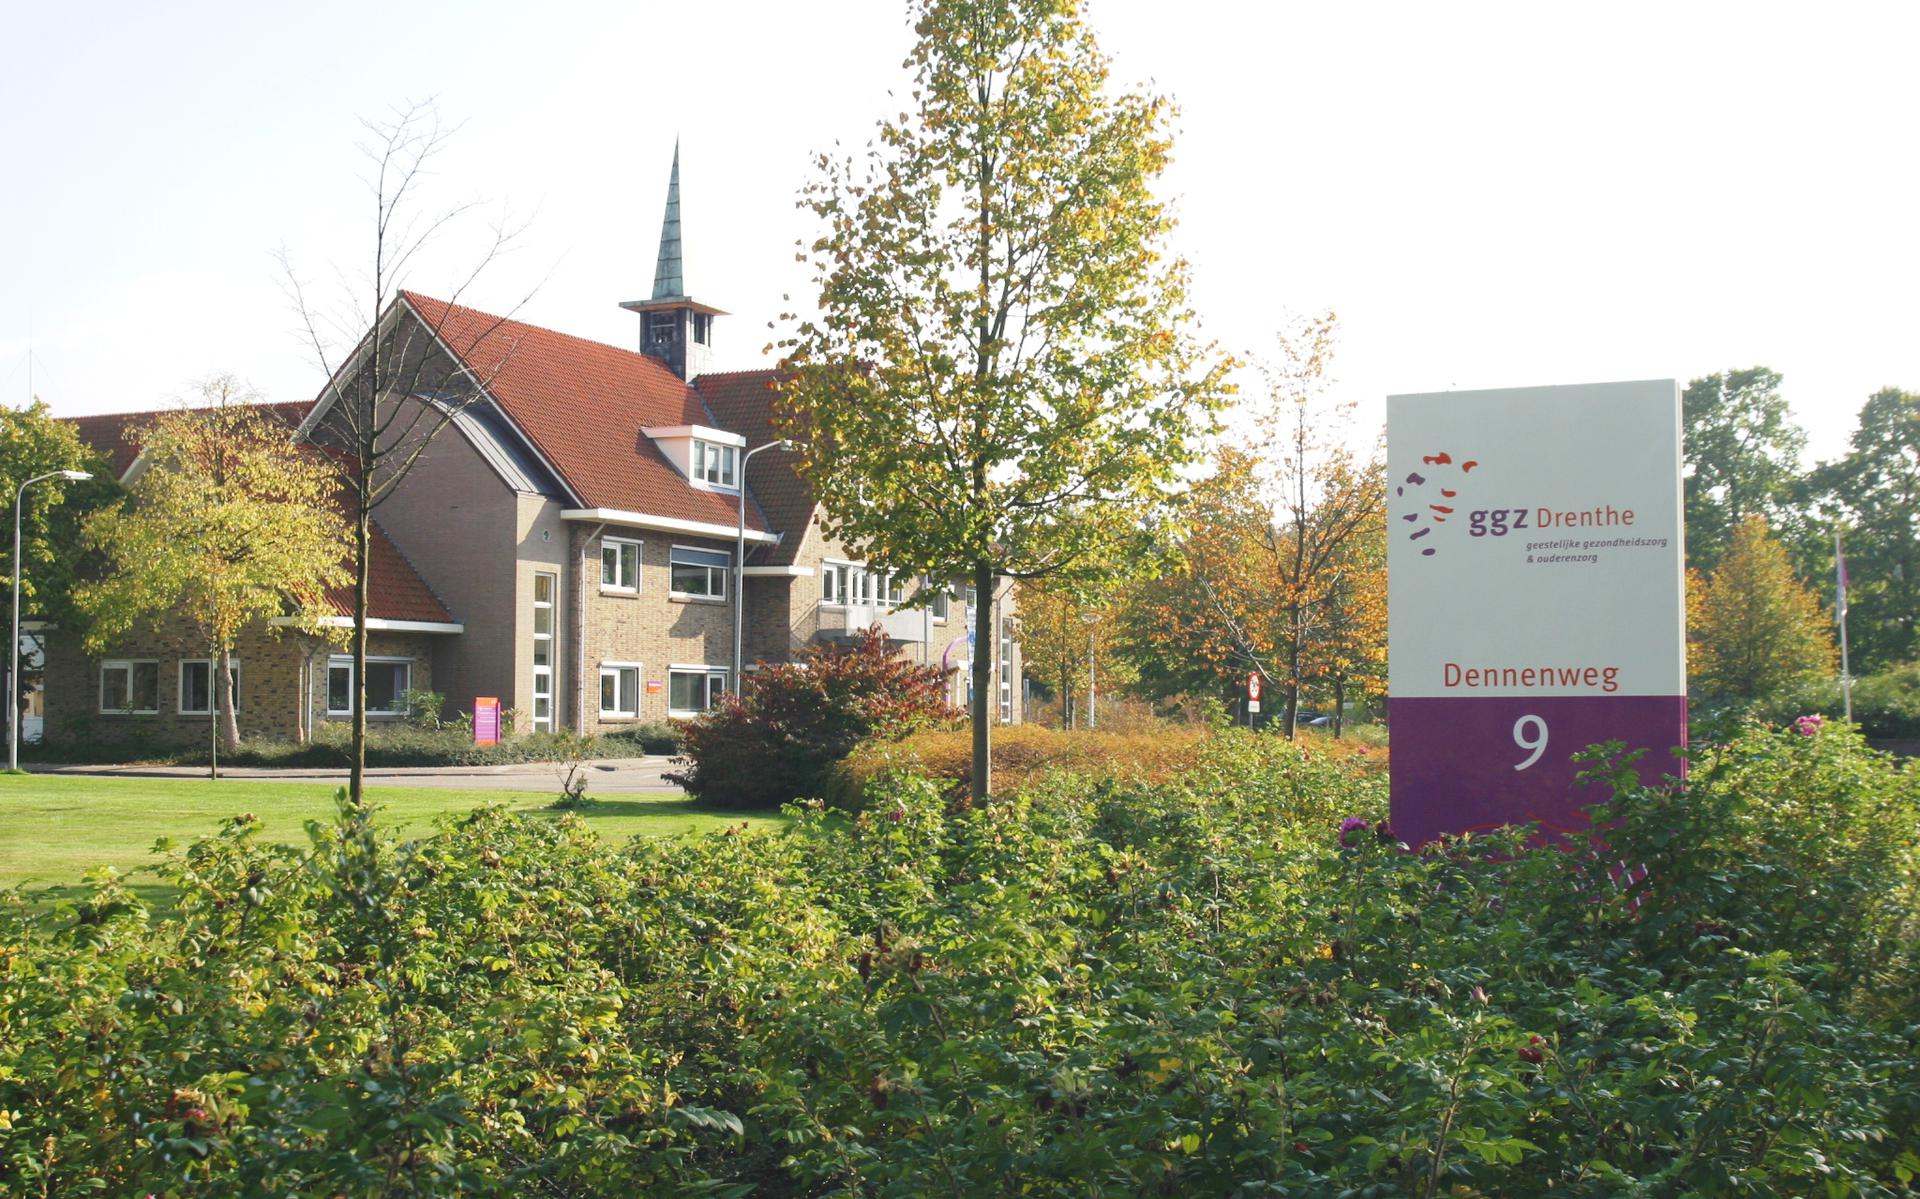 Het hoofdgebouw van de GGZ Drenthe aan de Dennenweg in Assen.